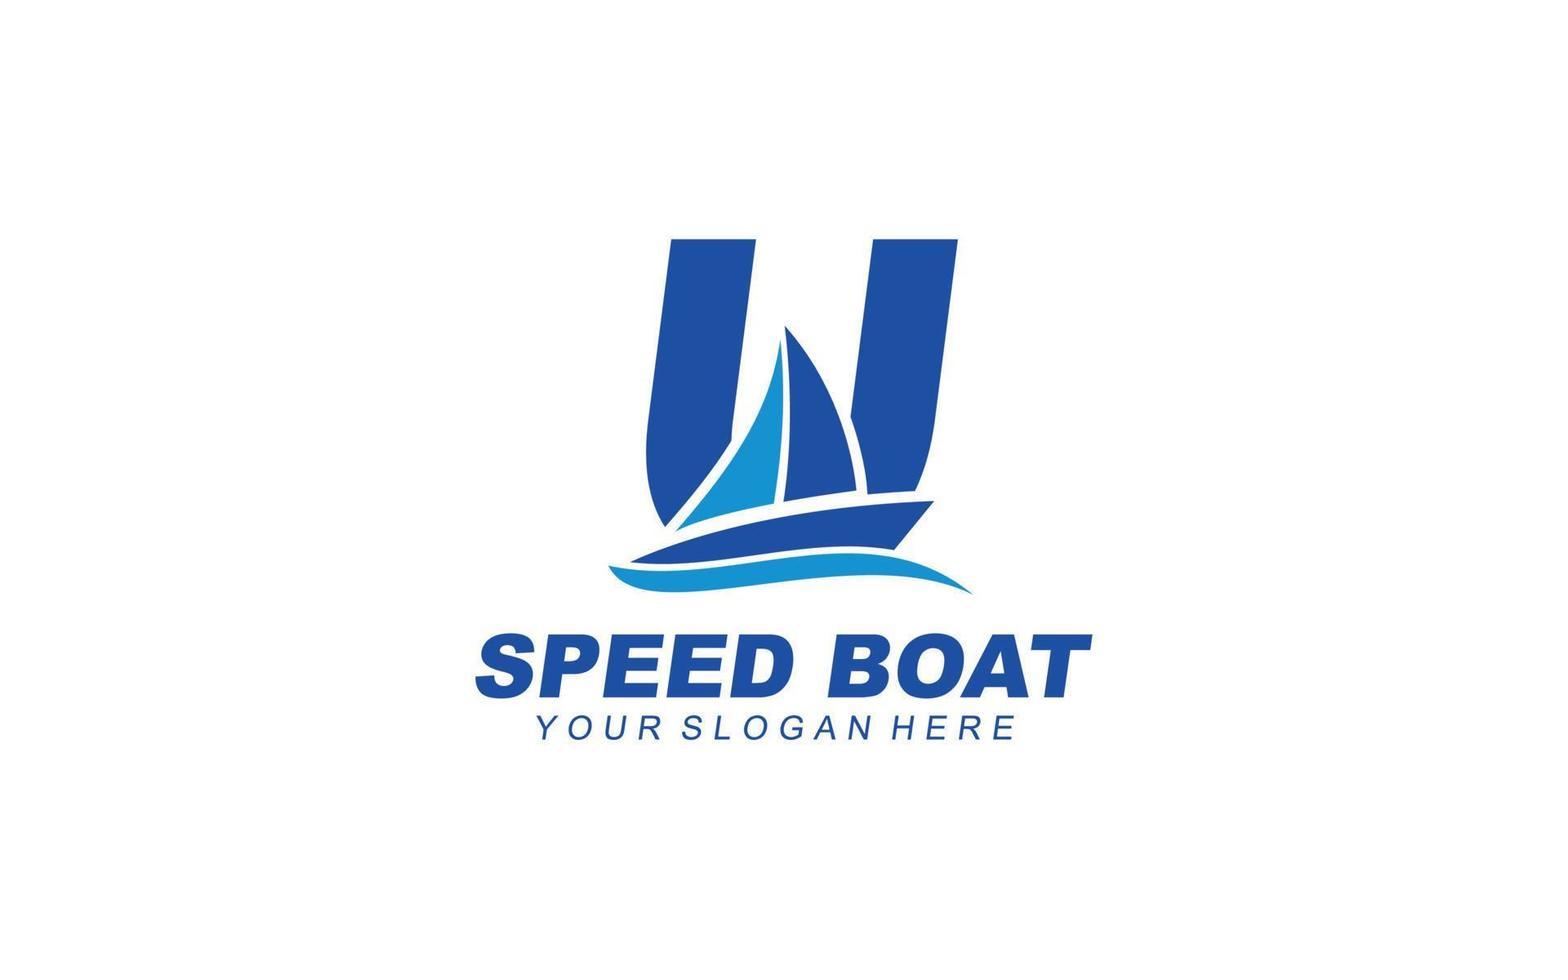 U Boat logo design inspiration. Vector letter template design for brand.